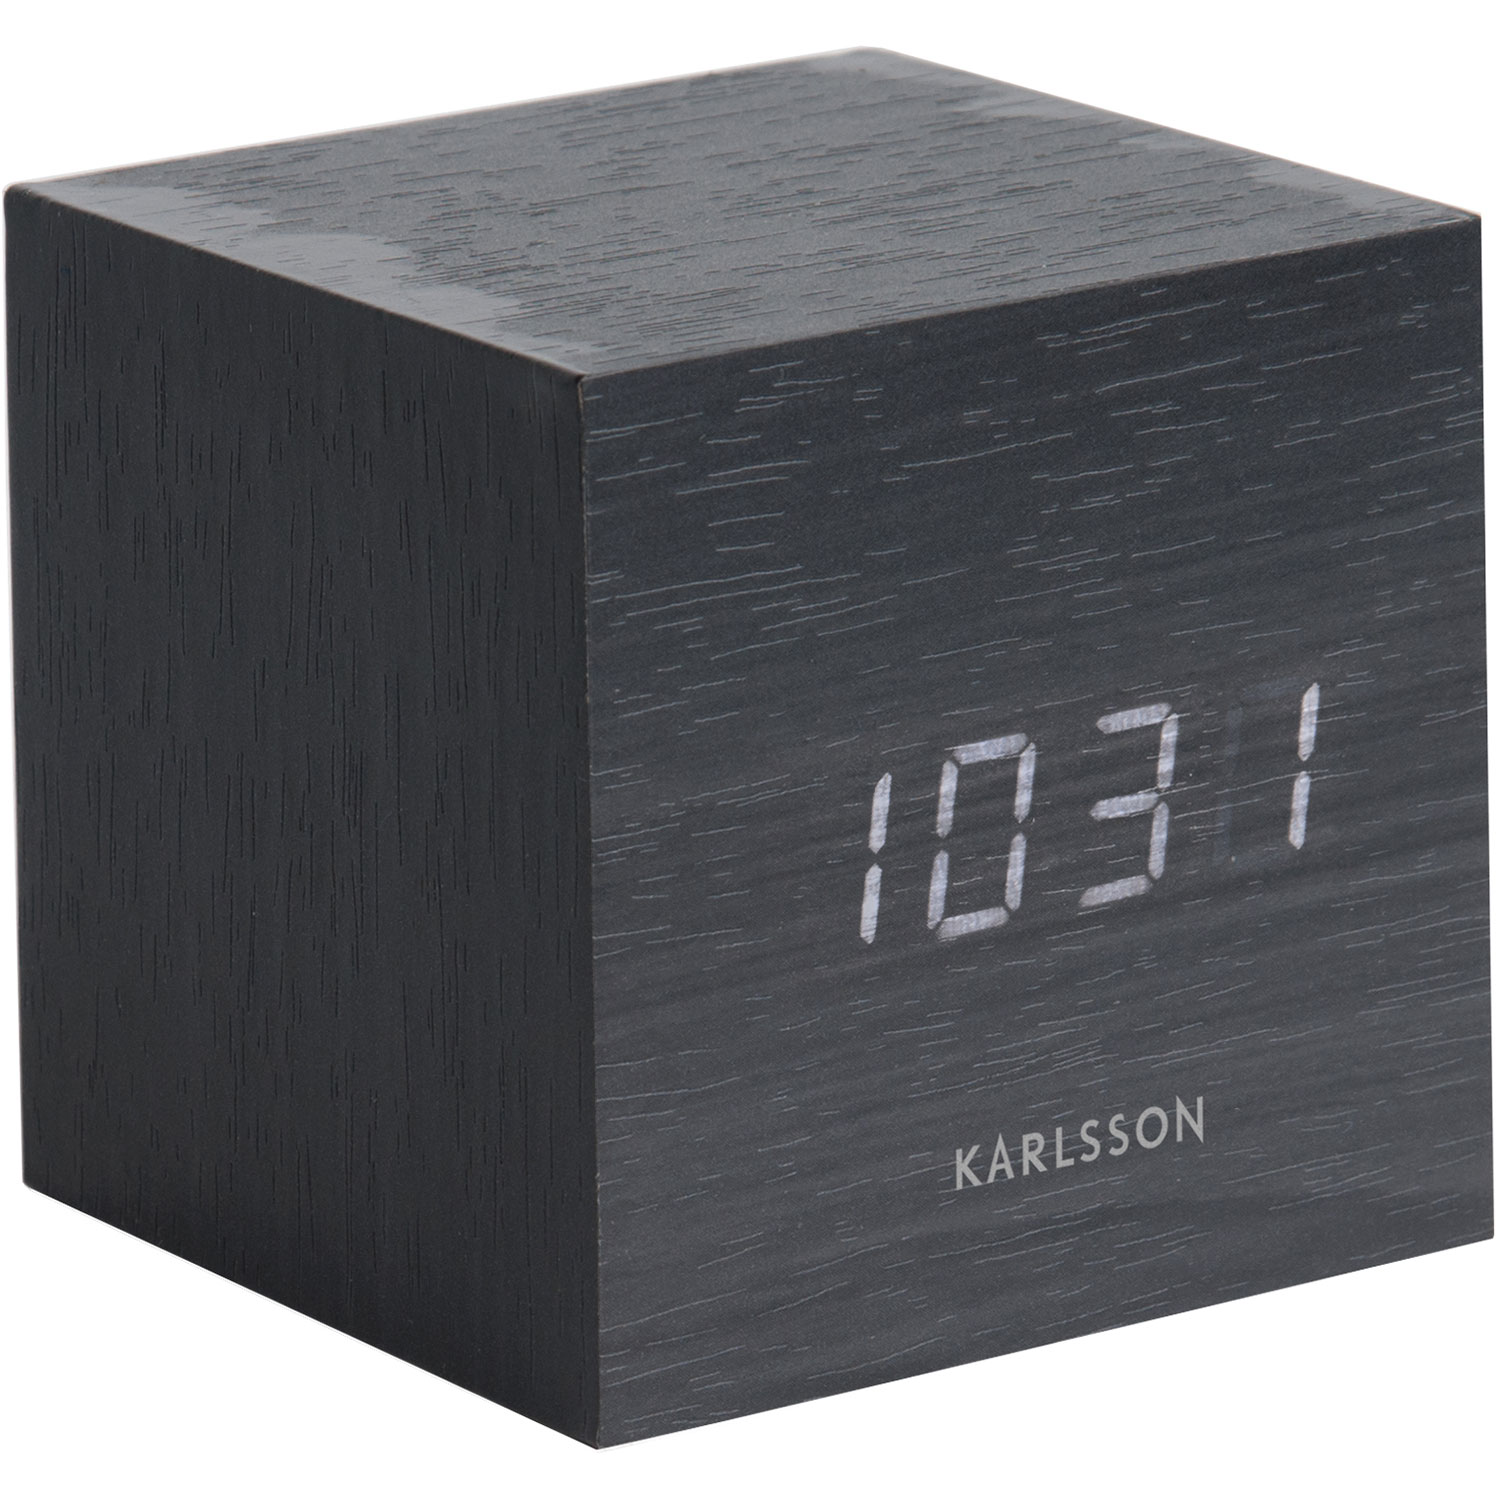 Karlsson Mini Cube LED Wecker Neu Holz braun Würfel